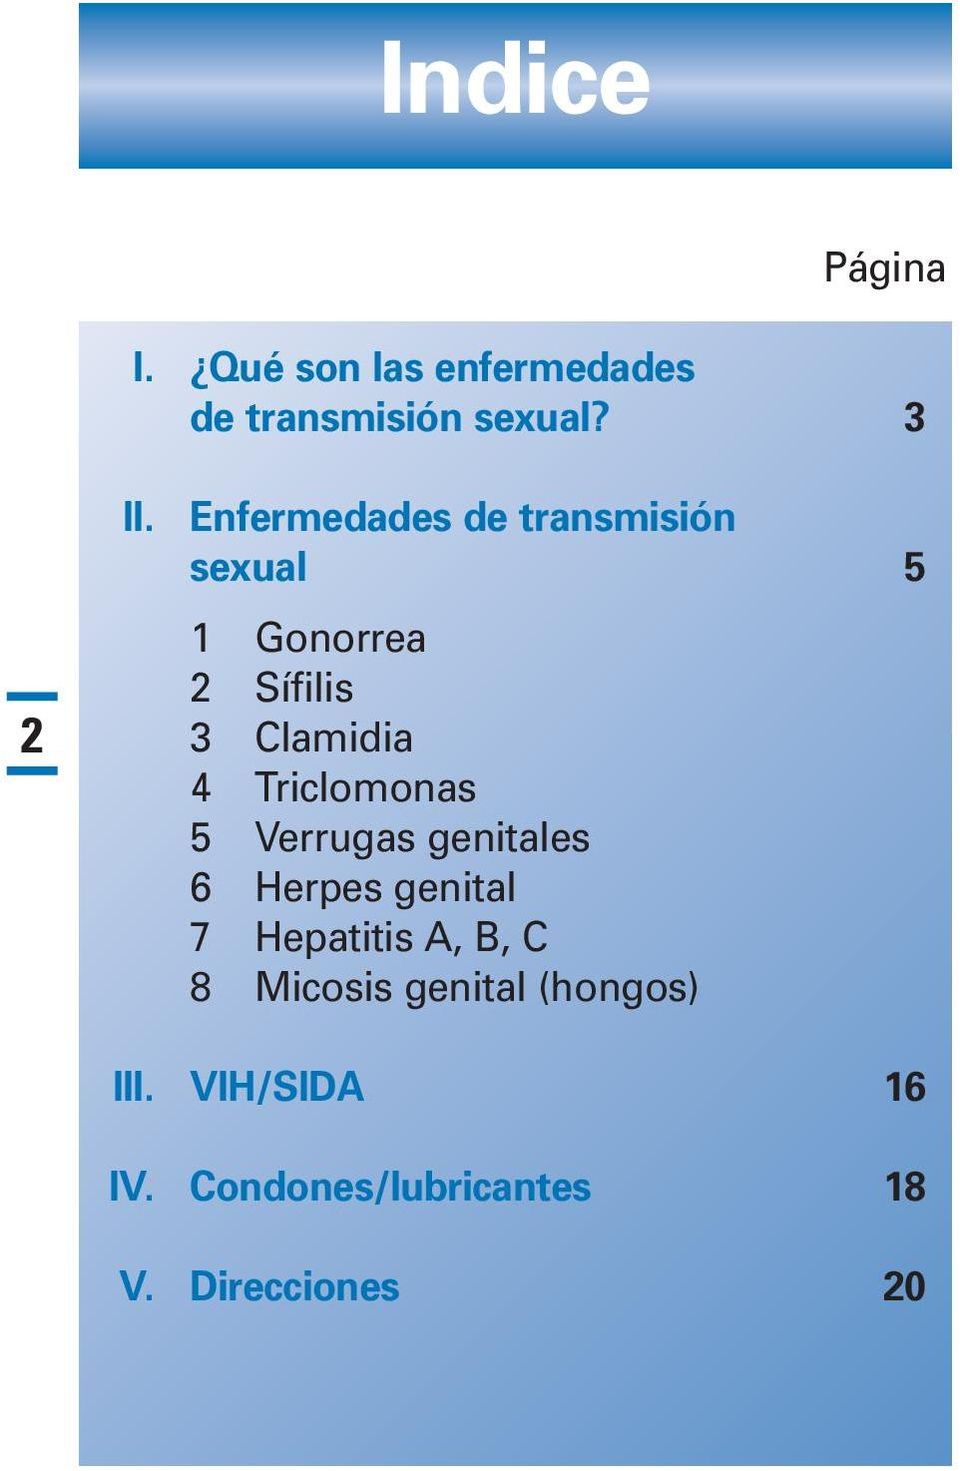 Triclomonas 5 Verrugas genitales 6 Herpes genital 7 Hepatitis A, B, C 8